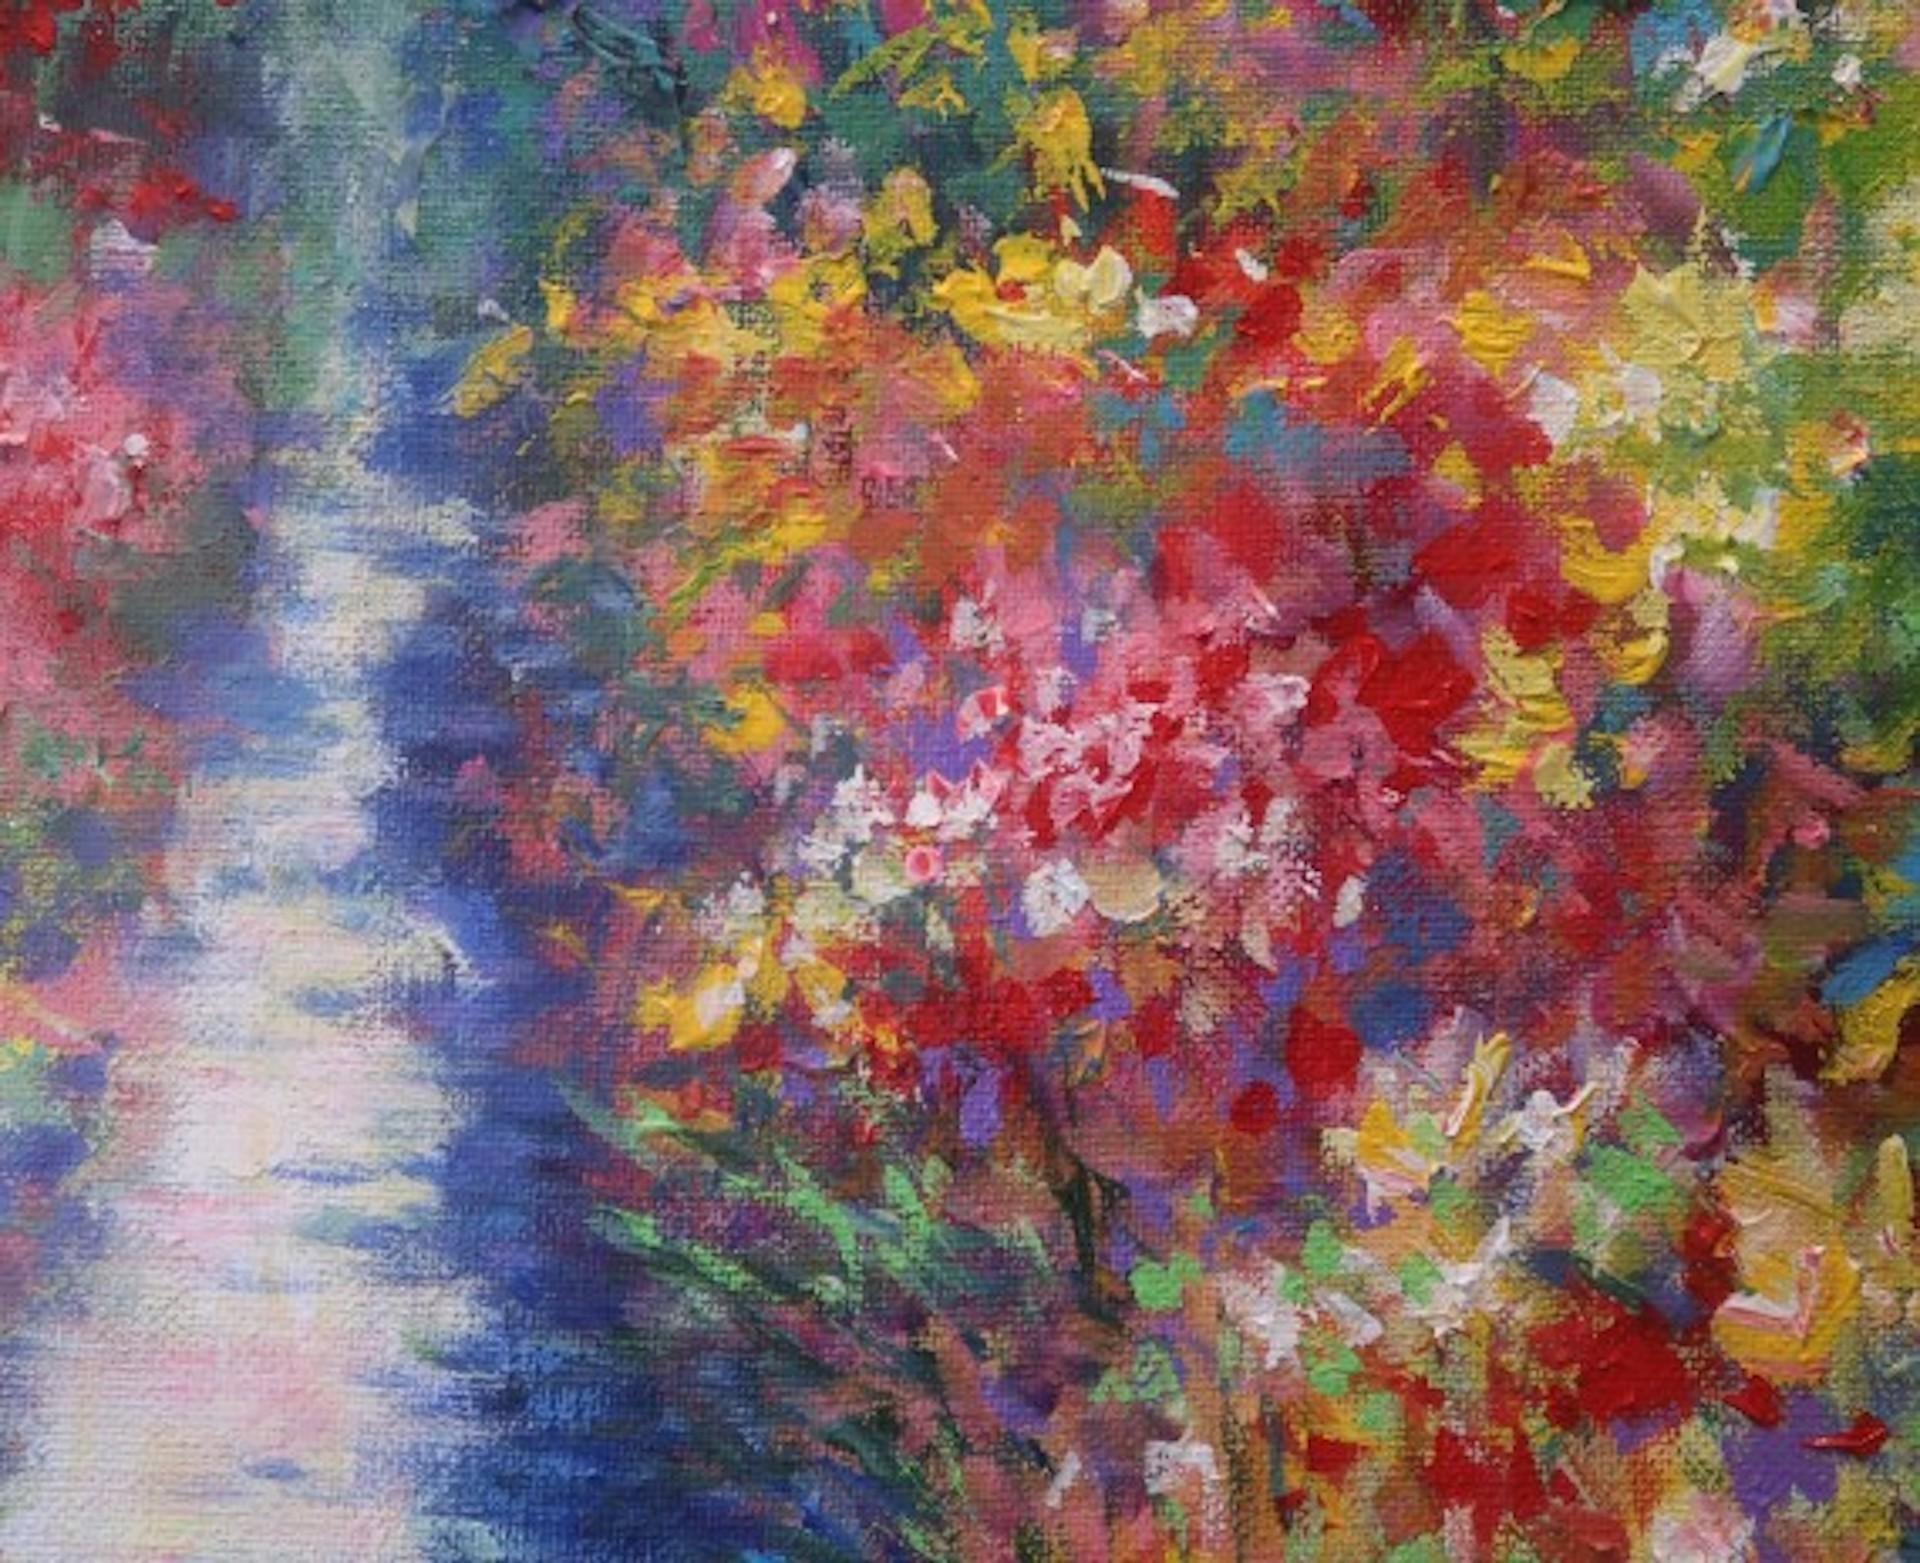 Rose Time At Monet's Garden, Mary Chaplin, Peinture originale de paysage floral 4